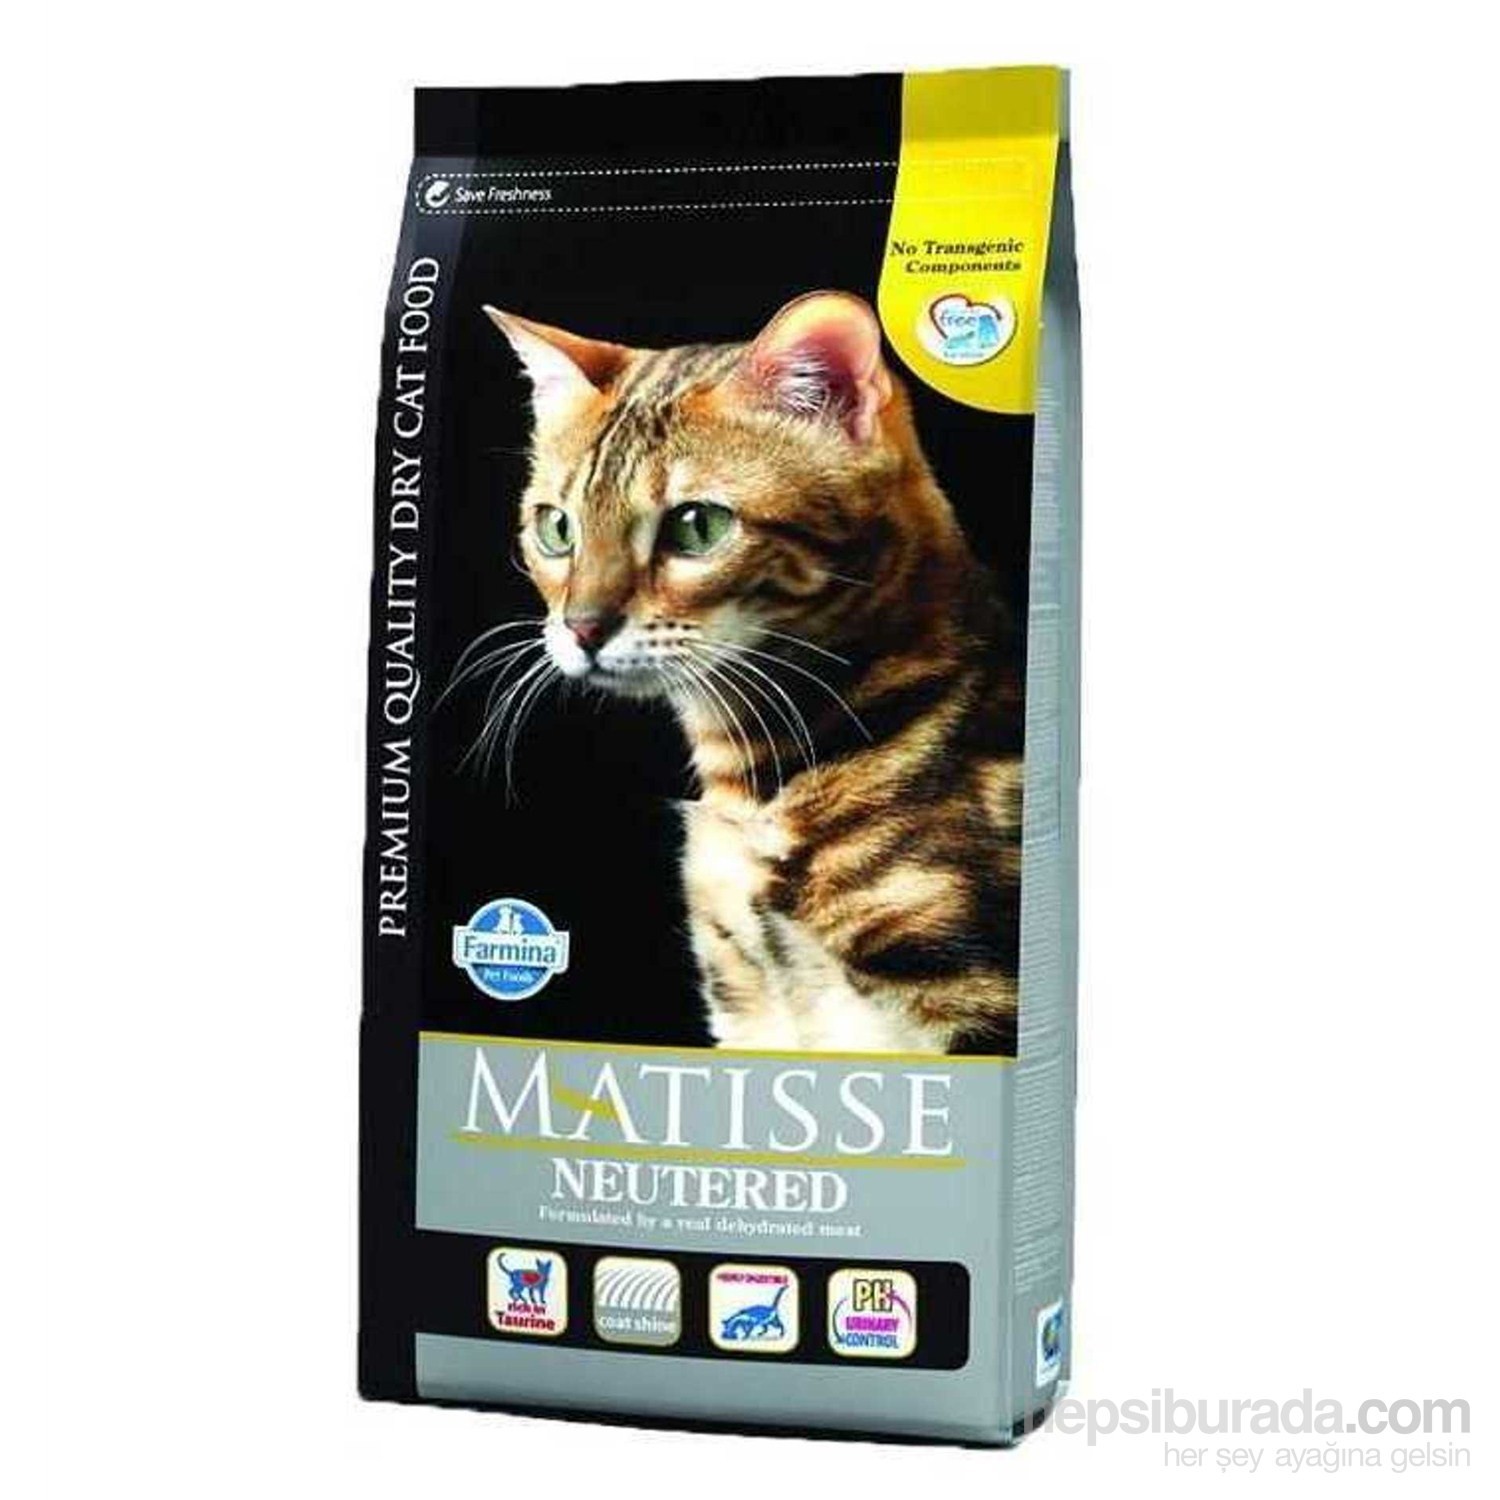 Matisse Sterilised Kısırlaştırılmış Kedi Maması 10 kg Fiyatı